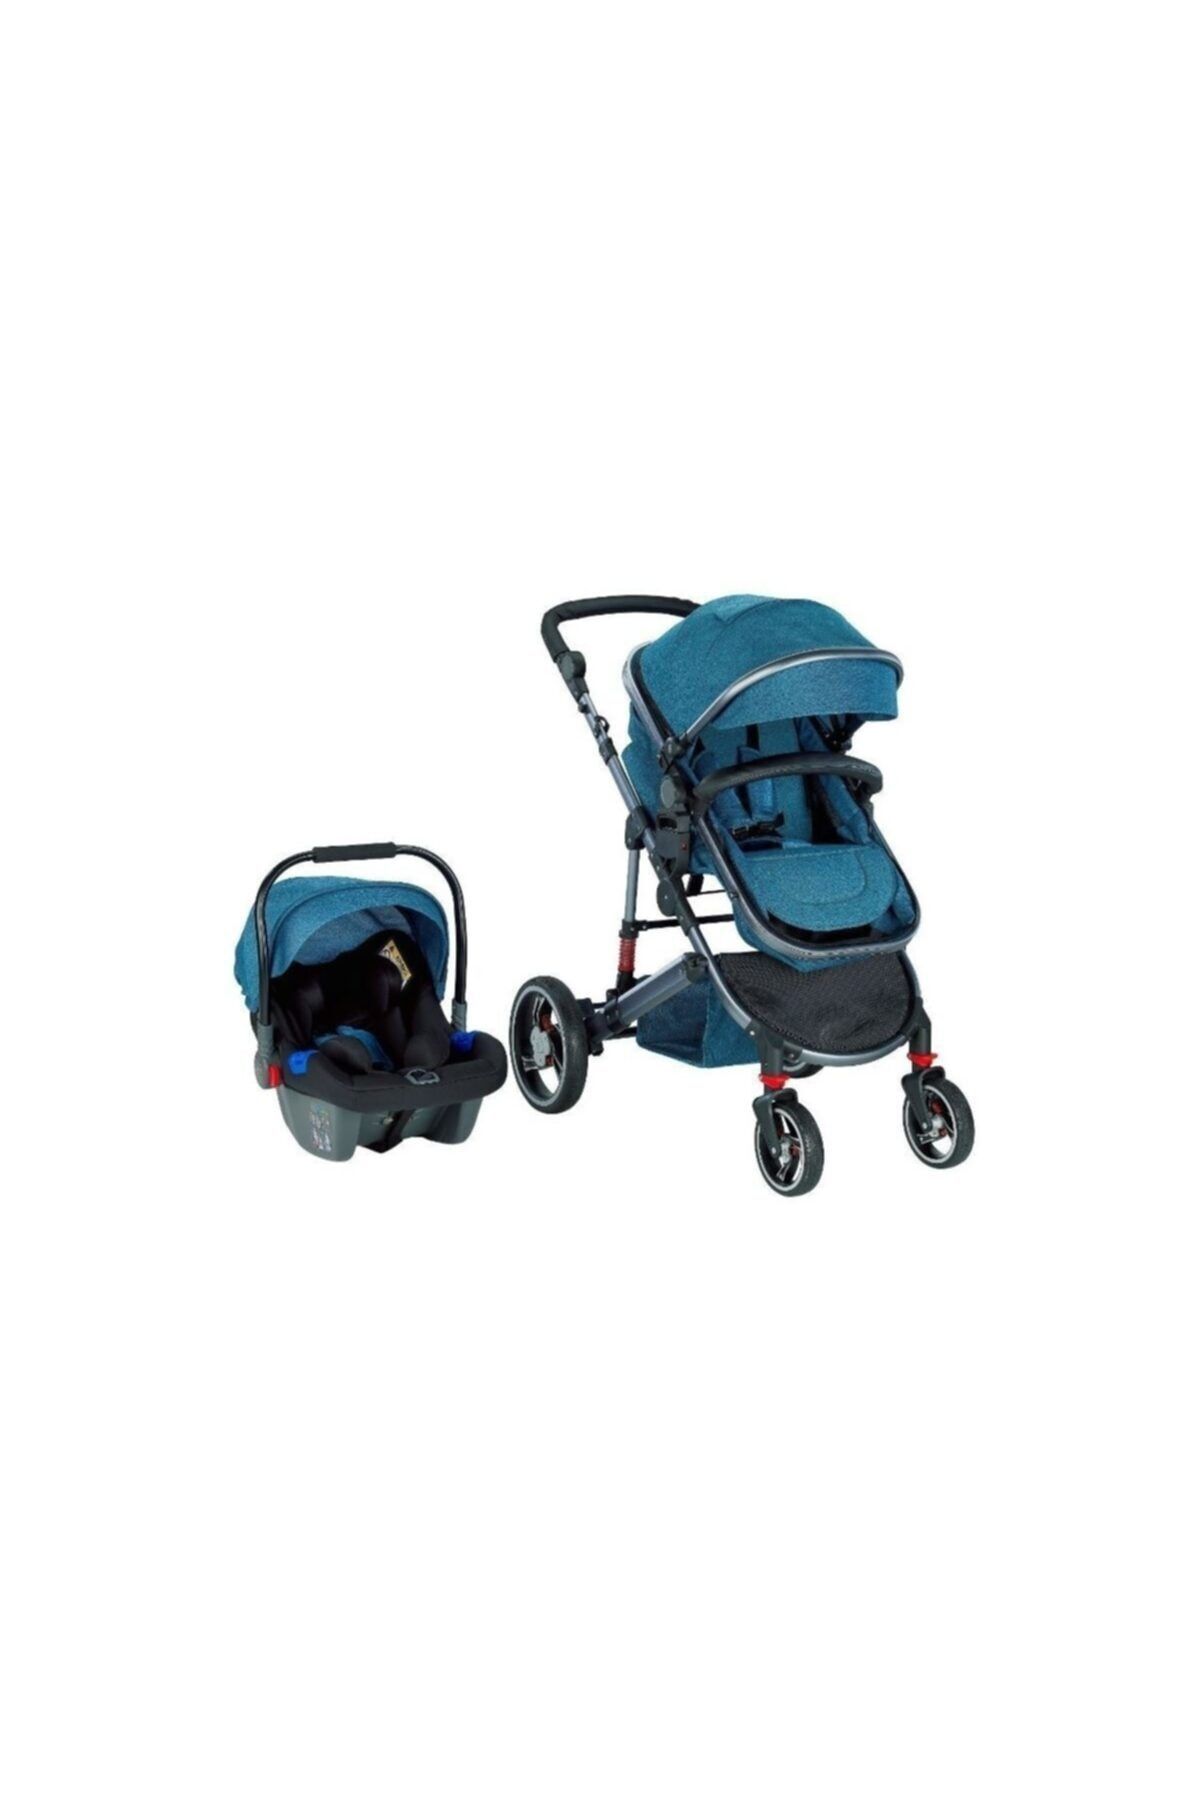 Baby2Go 2039 Star Plus Travel Sistem Bebek Arabası - Mavi